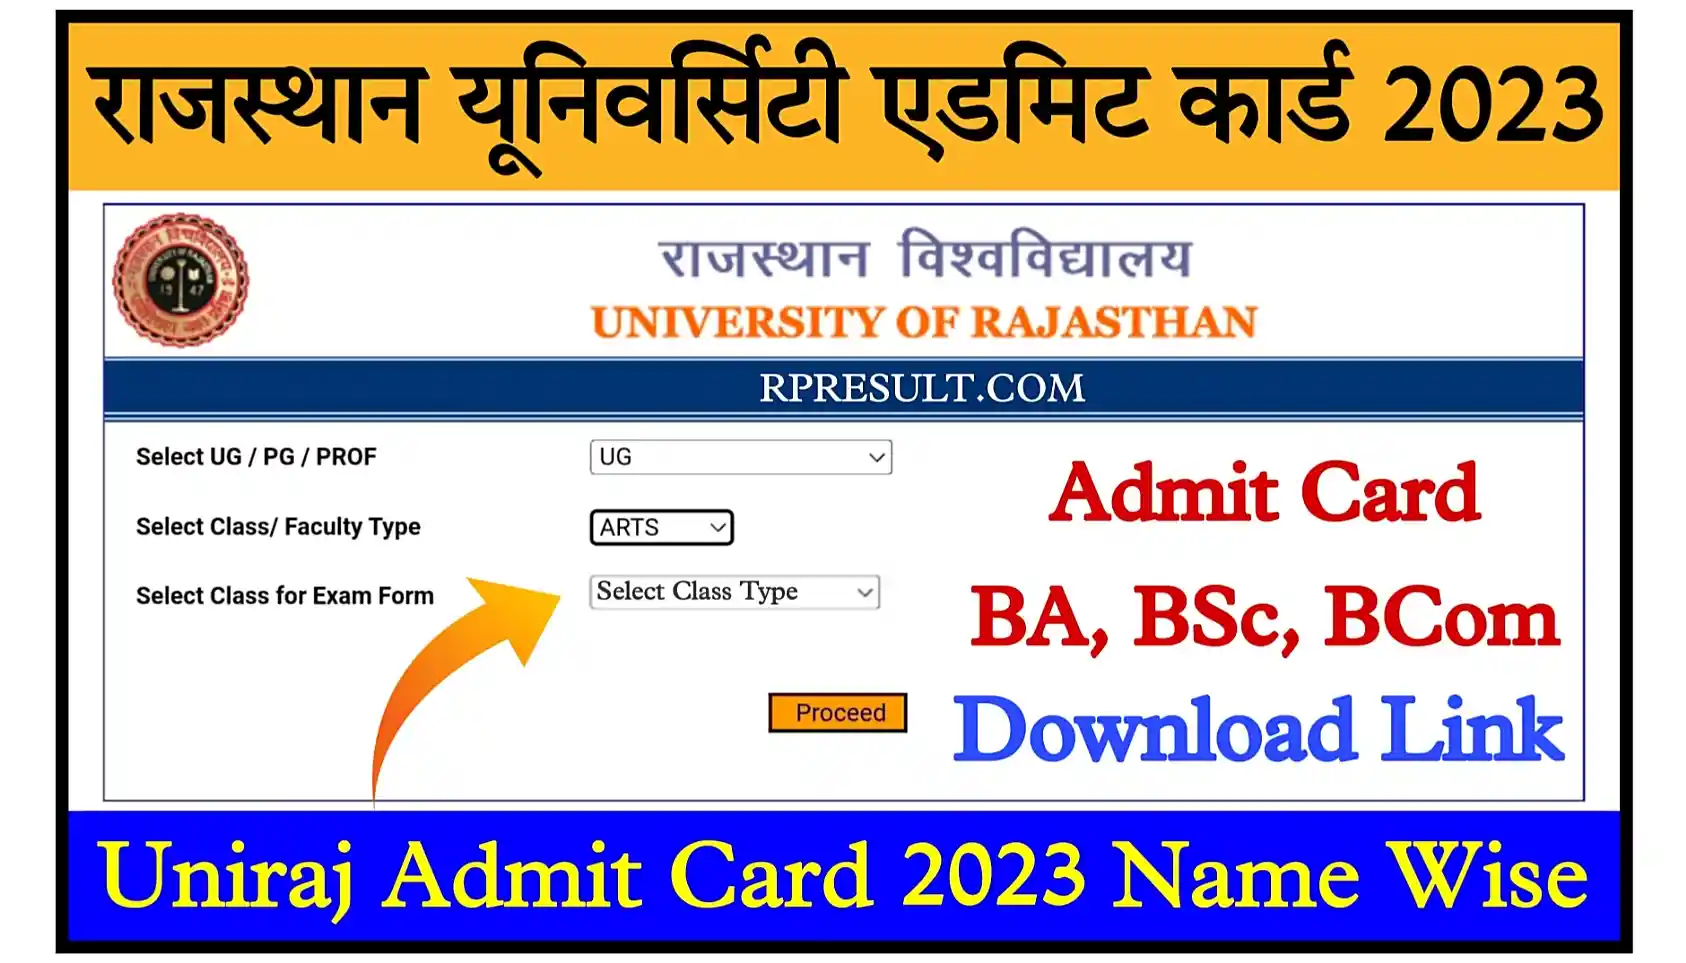 Rajasthan University Admit Card 2023 Download Link राजस्थान यूनिवर्सिटी BA, BSc, BCom एडमिट कार्ड जारी, यहां से डाउनलोड करें